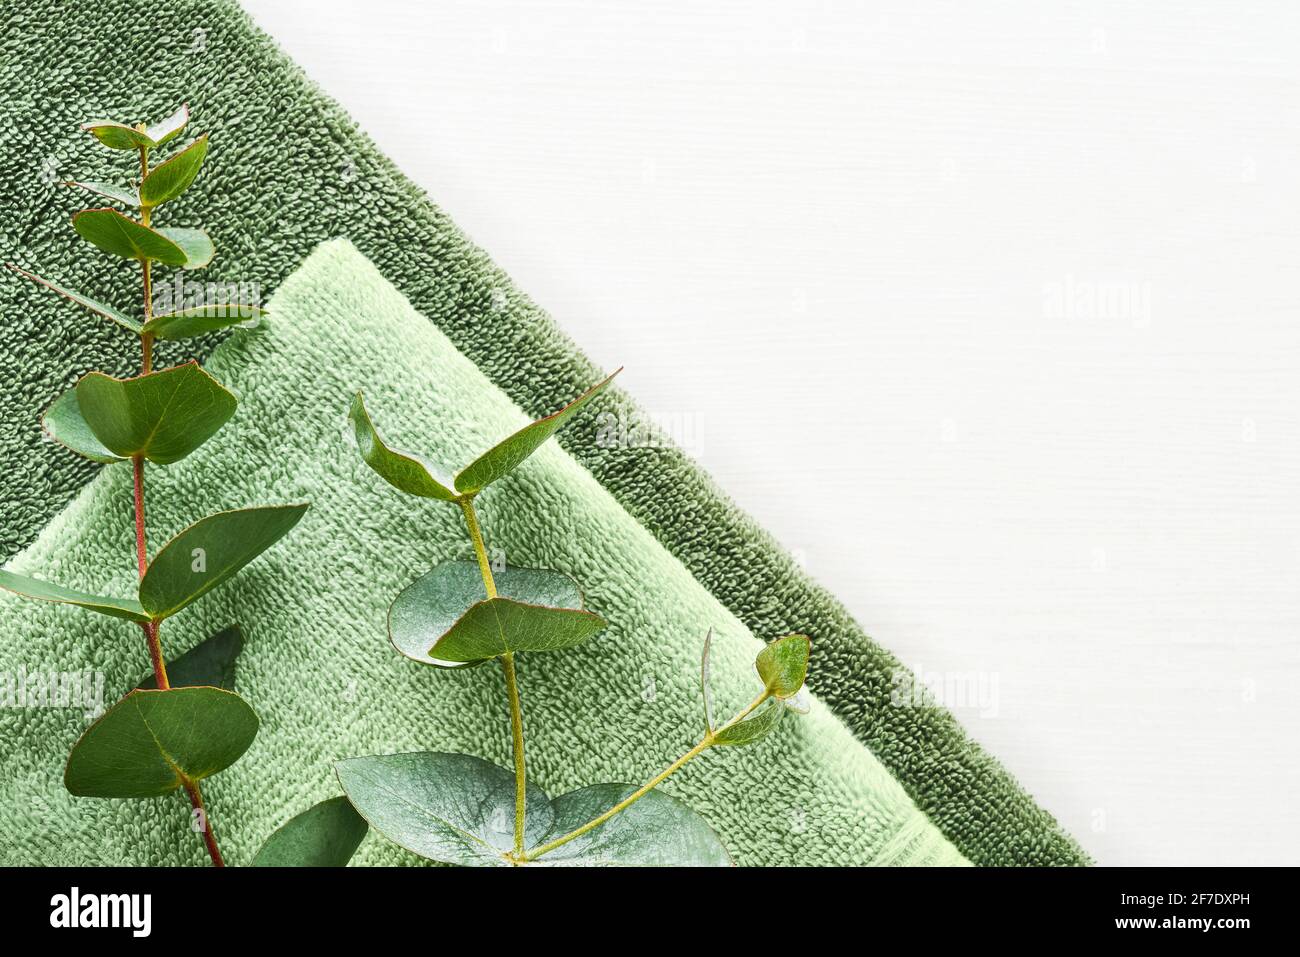 Serviettes molletonnées roulées et branche d'eucalyptus vert sur fond blanc. Style scandinave minimaliste. Hygiène, bien-être bien-être, concept de soins du corps. Banque D'Images